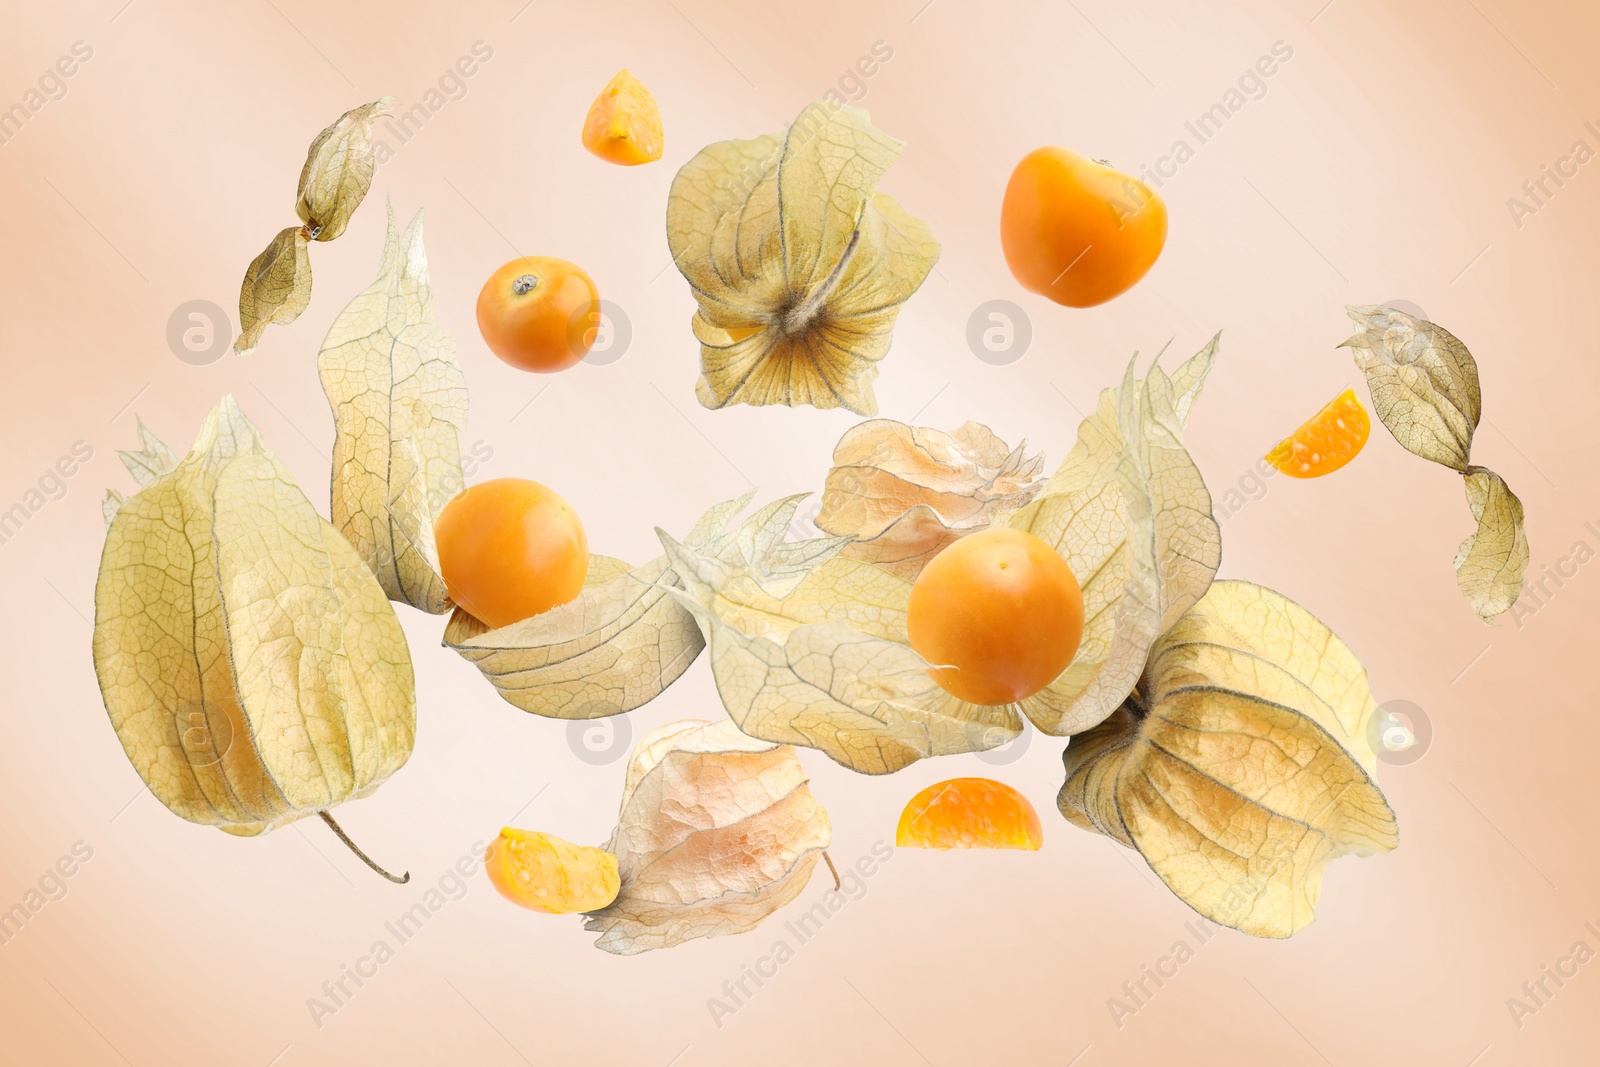 Image of Ripe orange physalis fruits with calyx falling on beige background